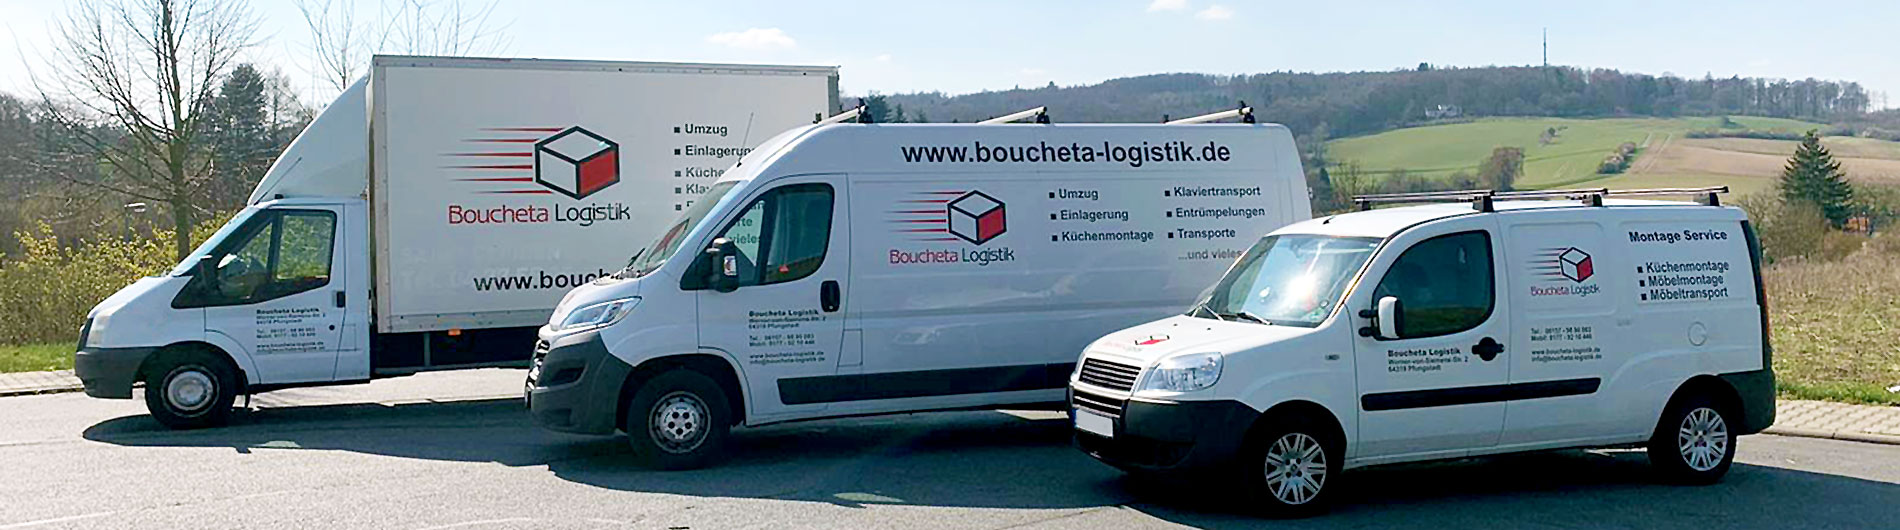 Boucheta Logistik und Transport in Darmstadt